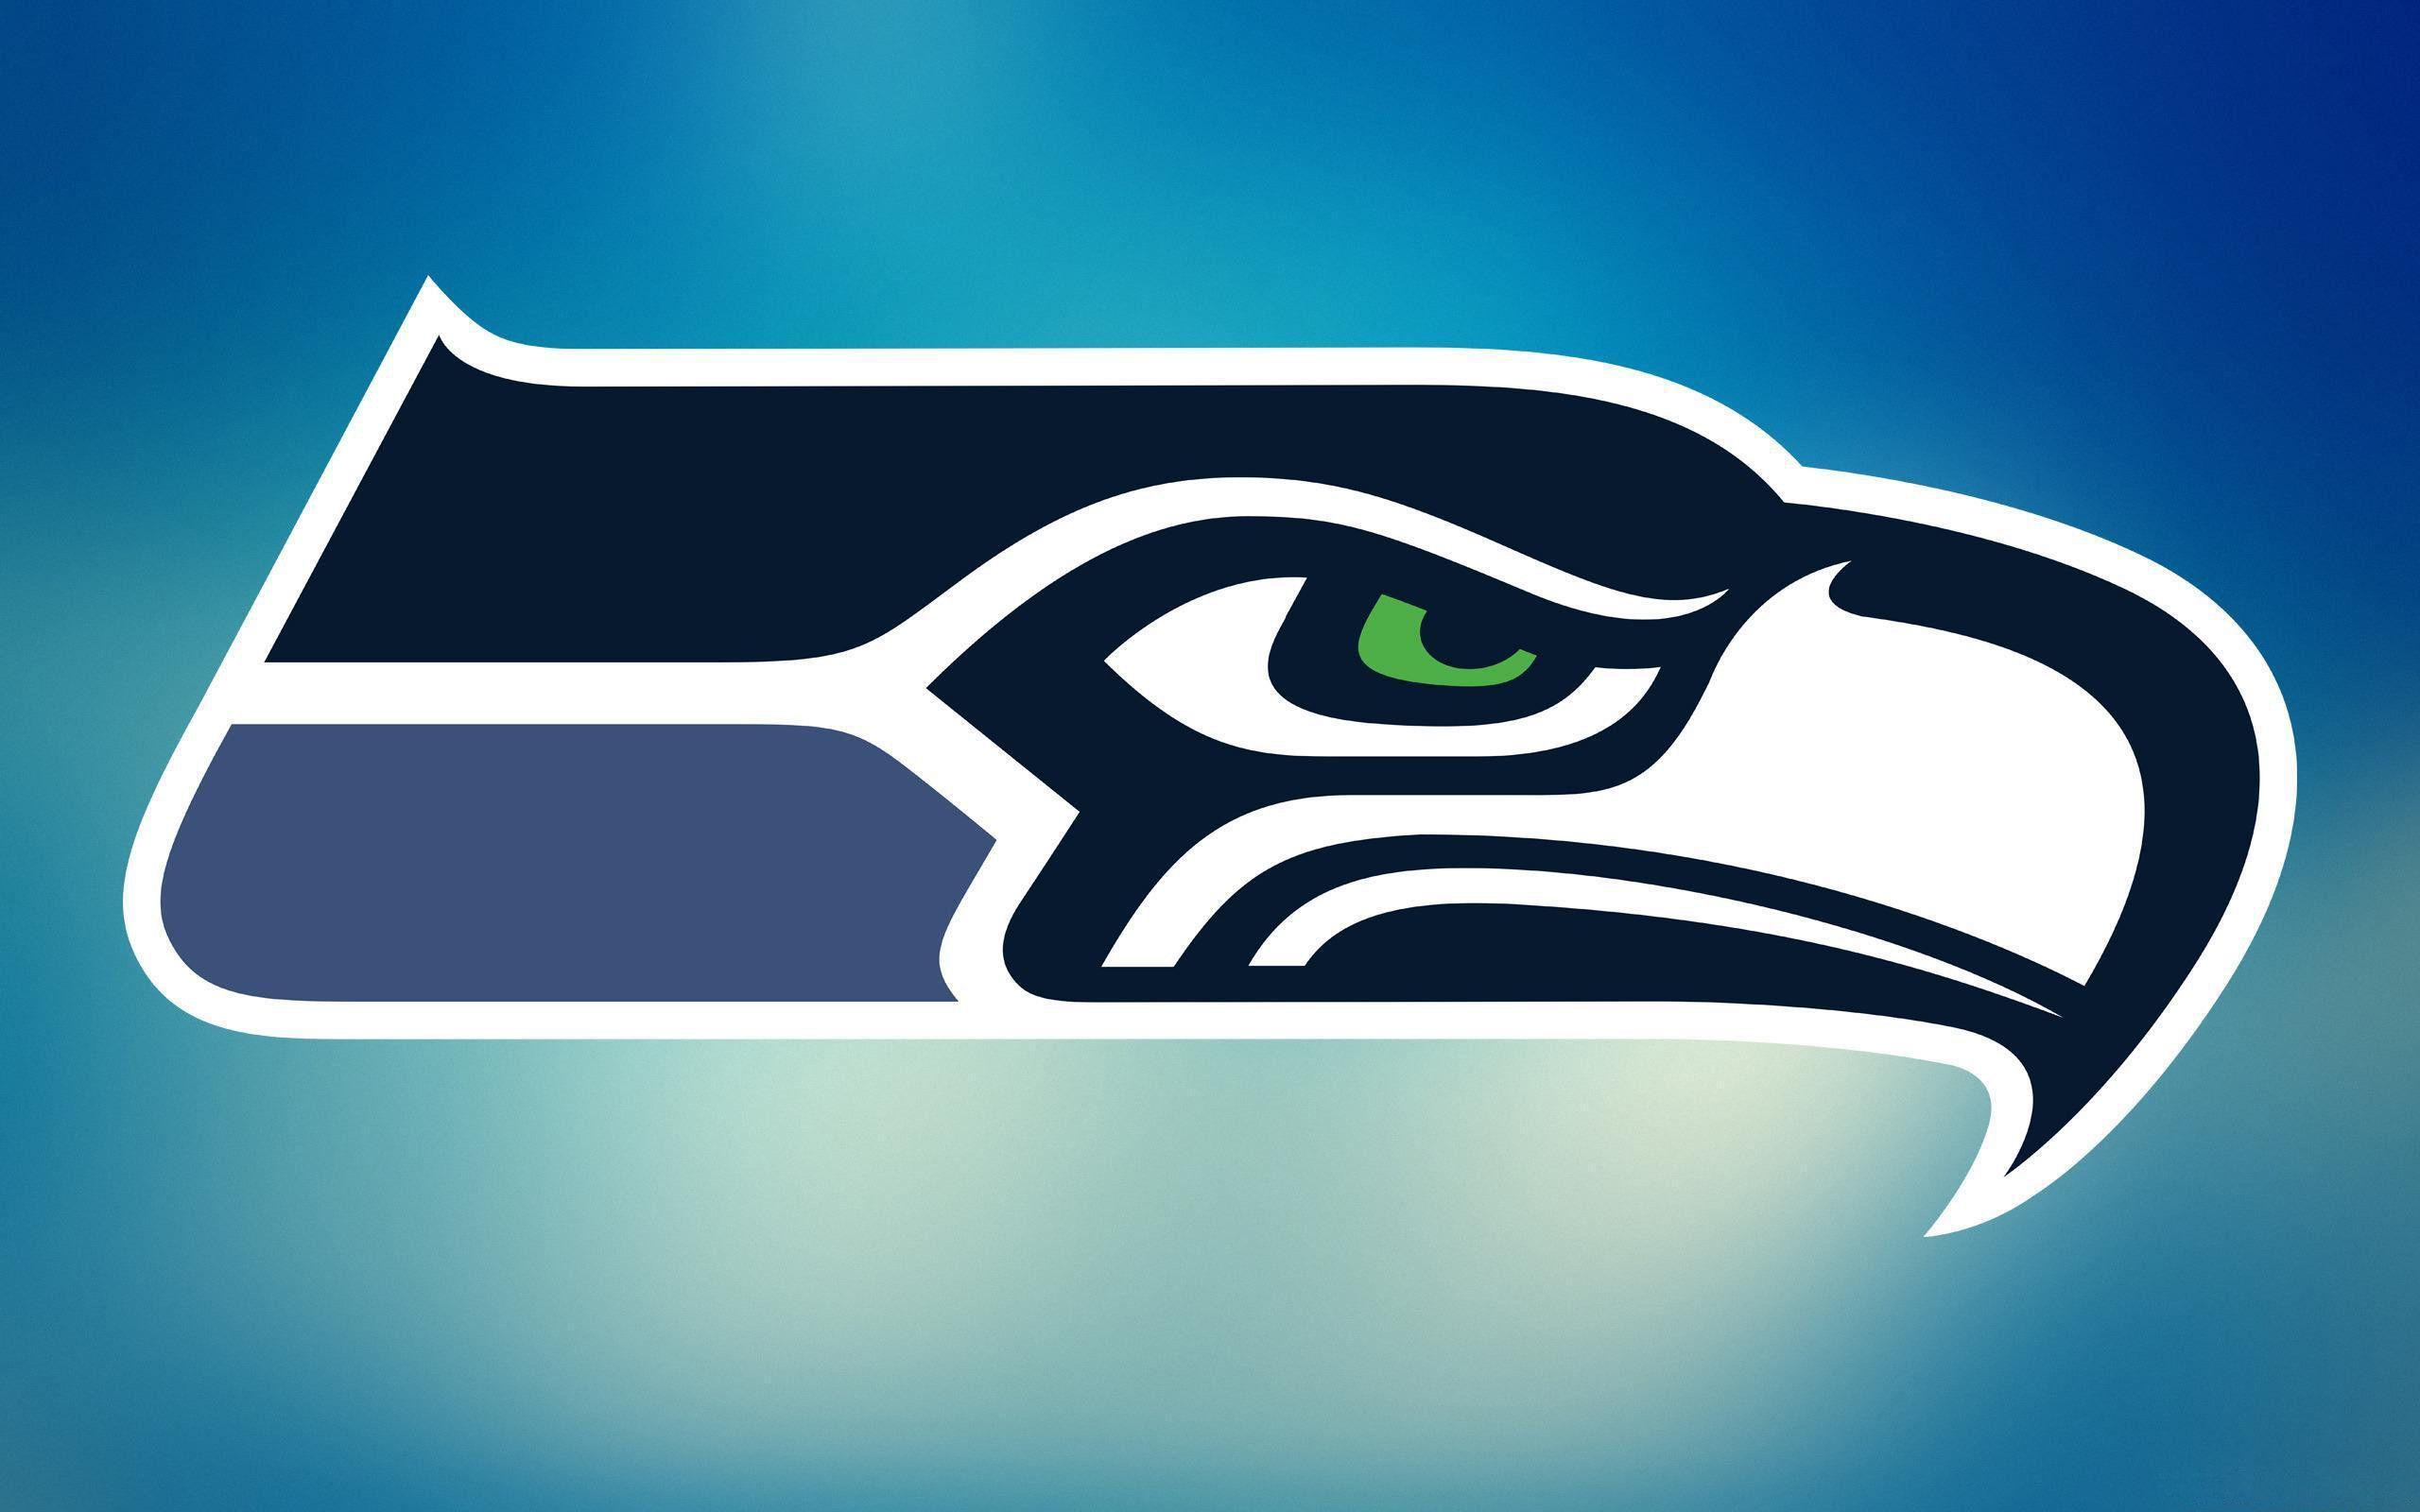 Seattle Seahawks 2014 NFL Logo Wallpaper Wide or HD. Sports